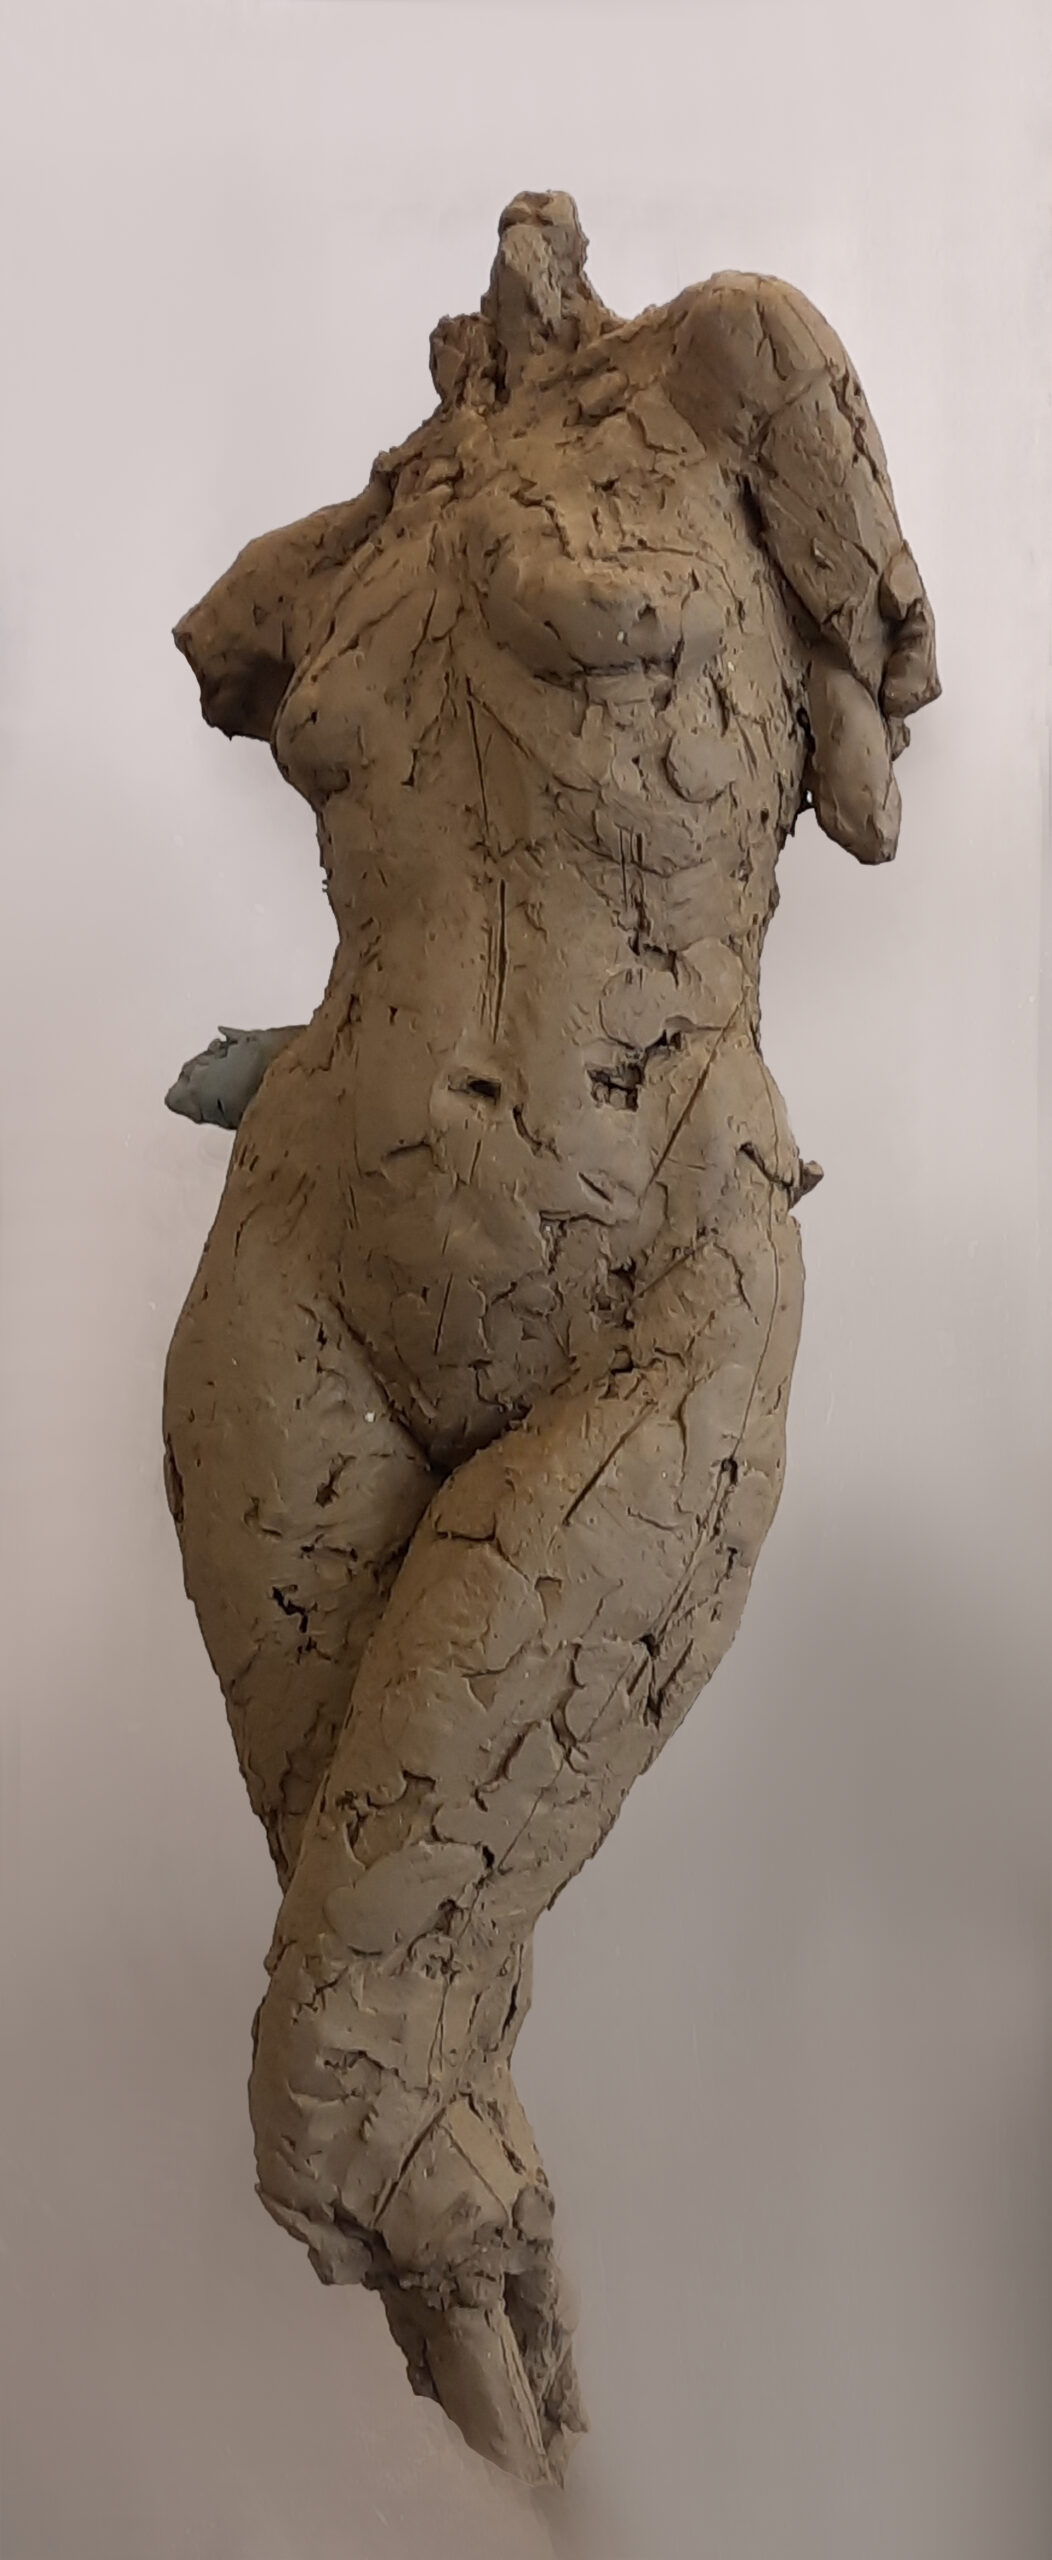 zdjęcie przedstawia rzeźbę z gliny- postać kobiecą w ujęciu od szyi do kolan, bez rąk,  jedna noga lekko ugięta. Struktura rzeźby fakturalna,ujęcie frontalne